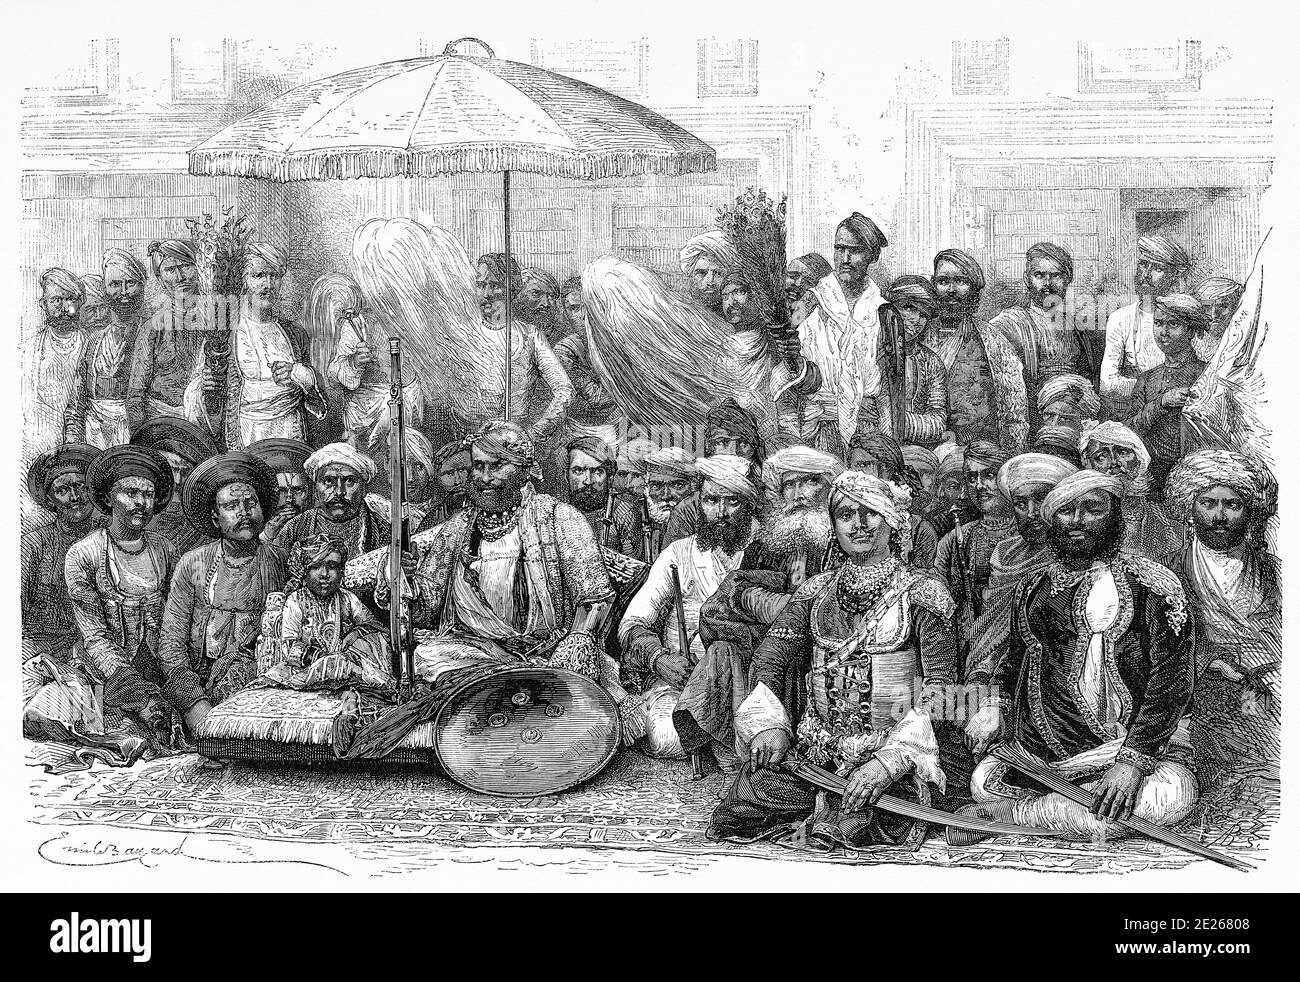 Durbar, Consiglio feudale e legale dello stato principesco di Maharaja Rana di Dholpur, regno di Dholepore. Rajasthan, India. Vecchia illustrazione di incisione da El Mundo en la mano 1878 Foto Stock